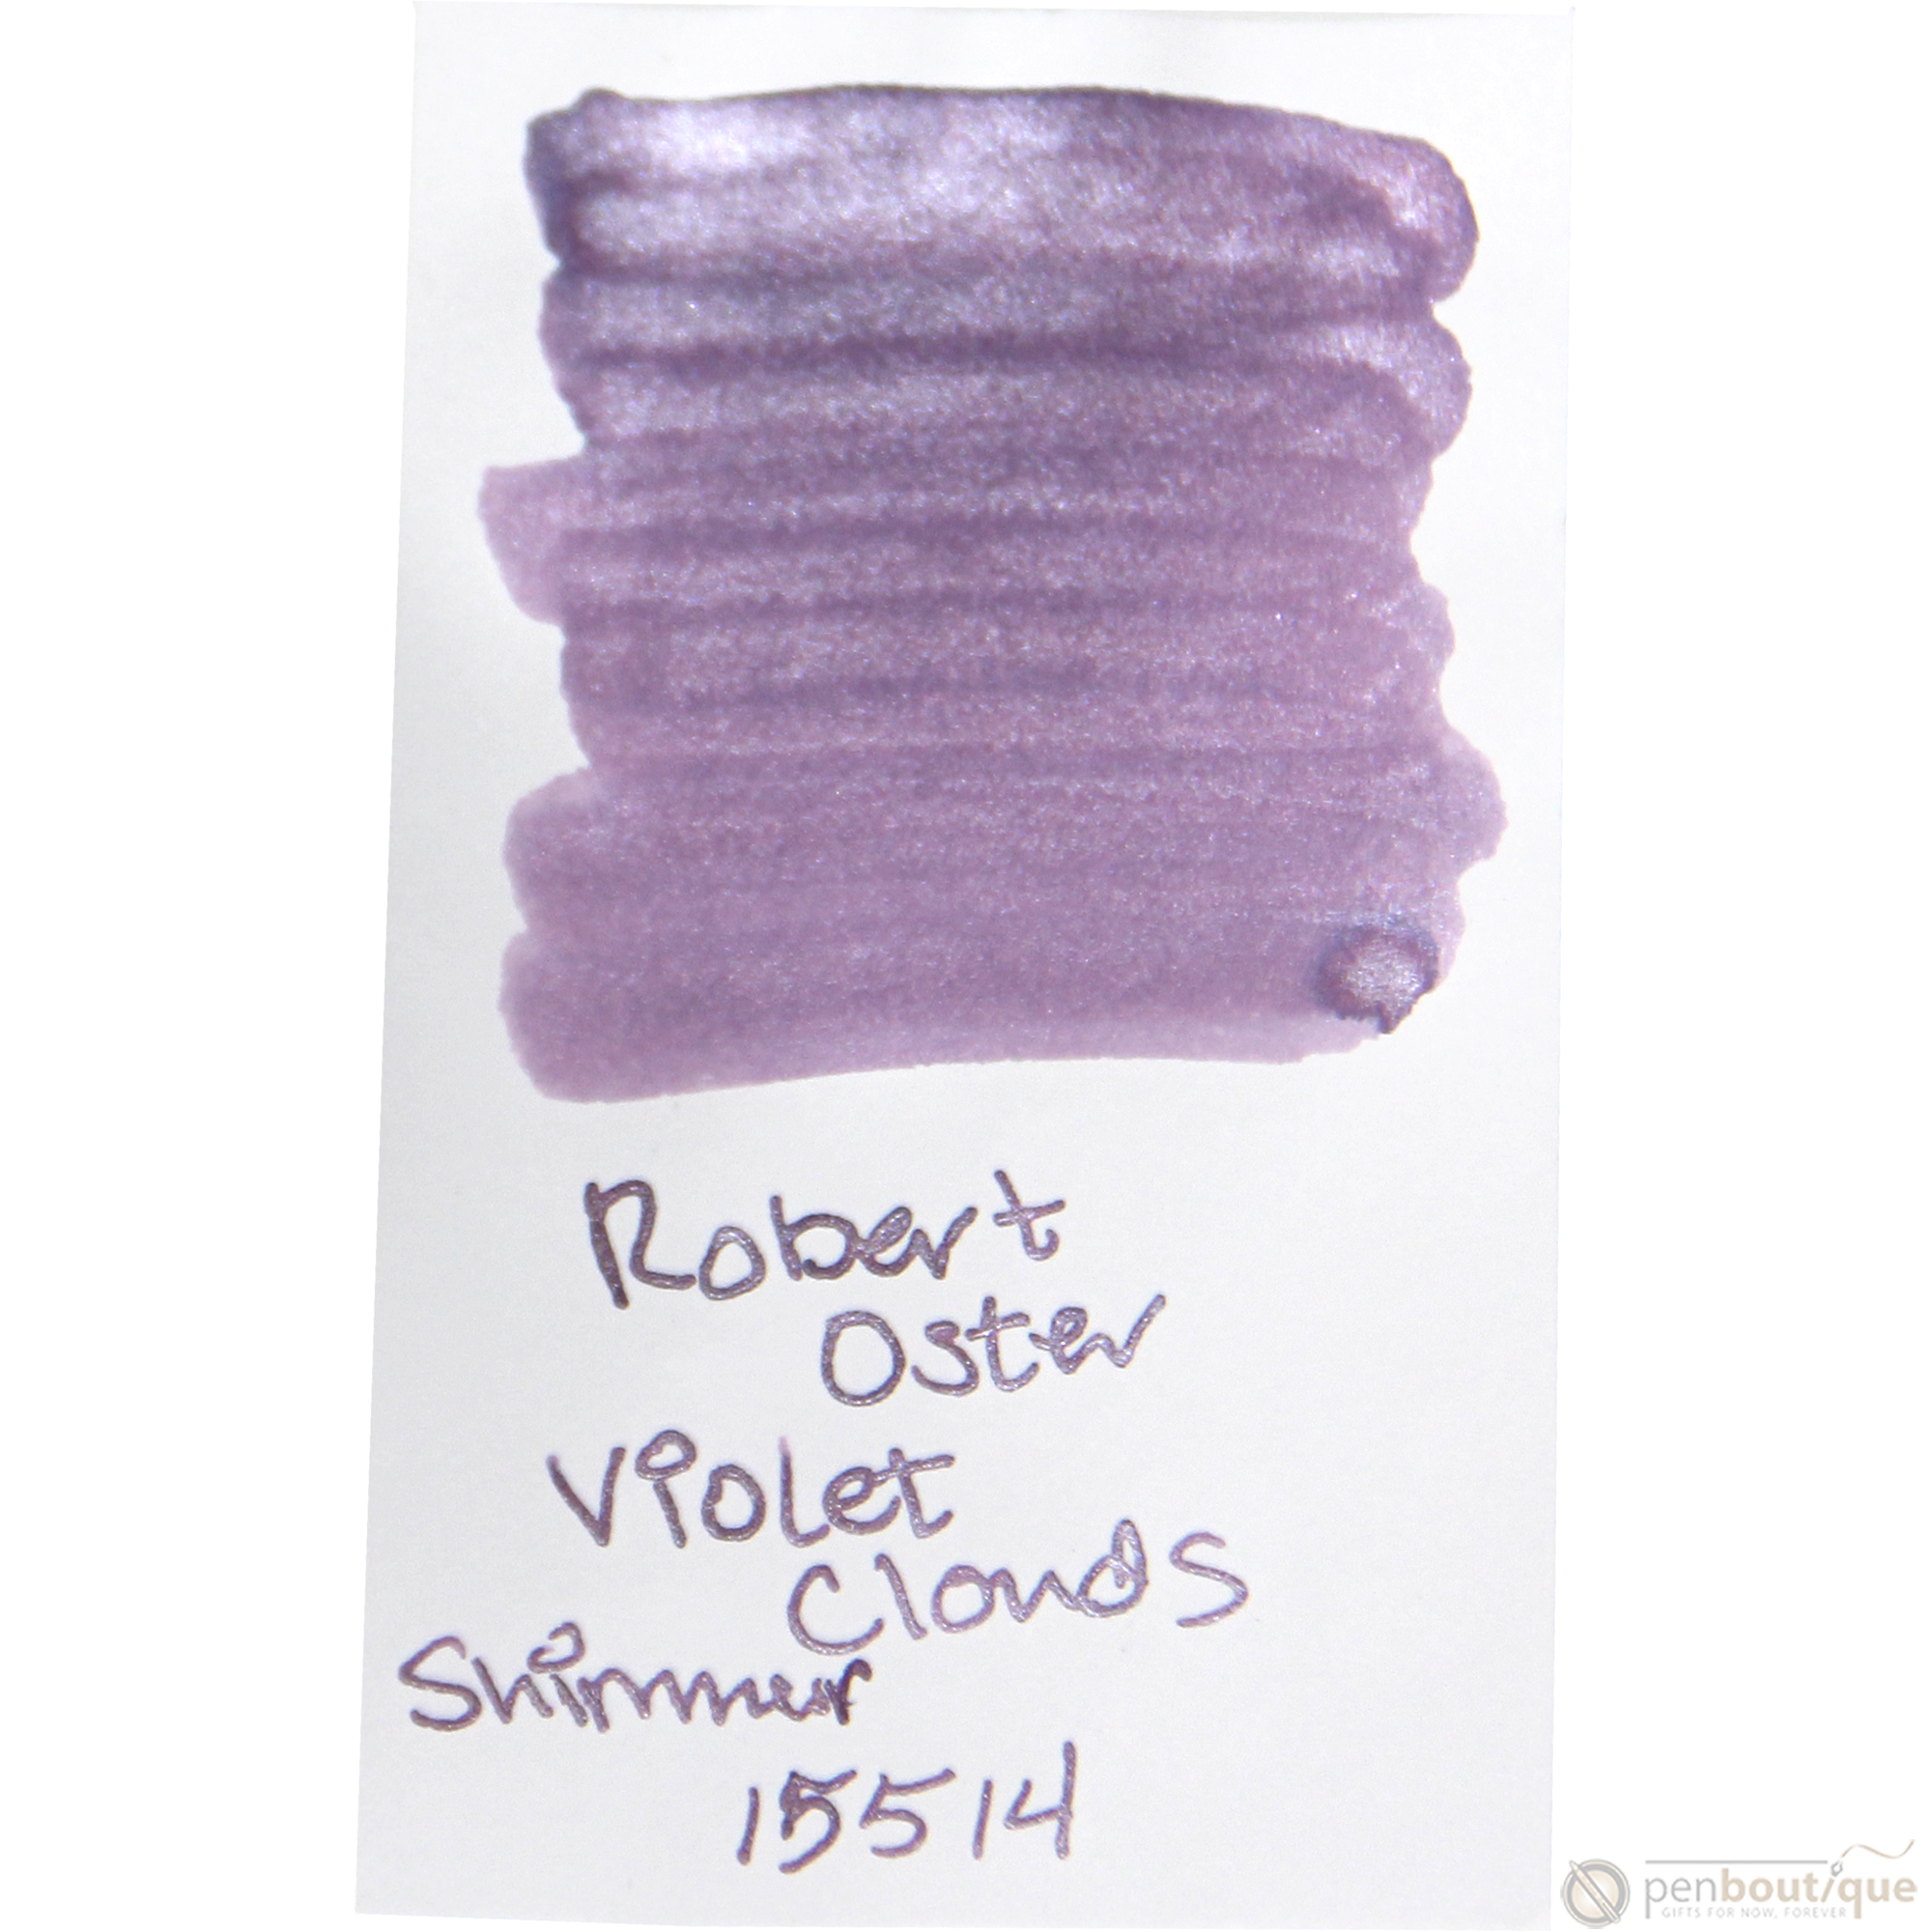 Robert Oster Shake'N'Shimmy Ink Bottle - Violet Clouds - 50ml-Pen Boutique Ltd